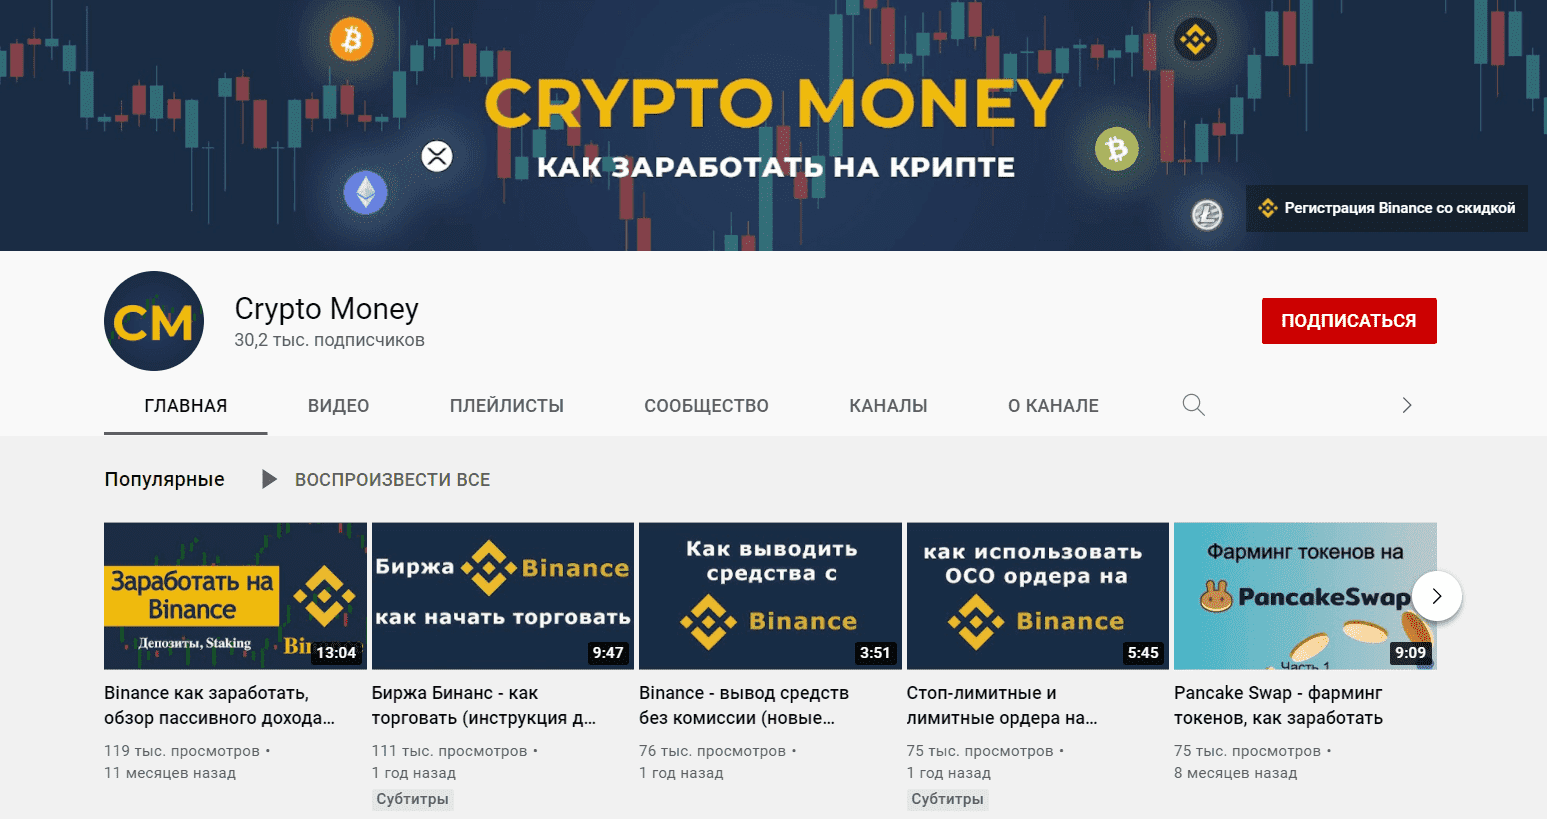 Ютуб-канал инвестора Crypto Money